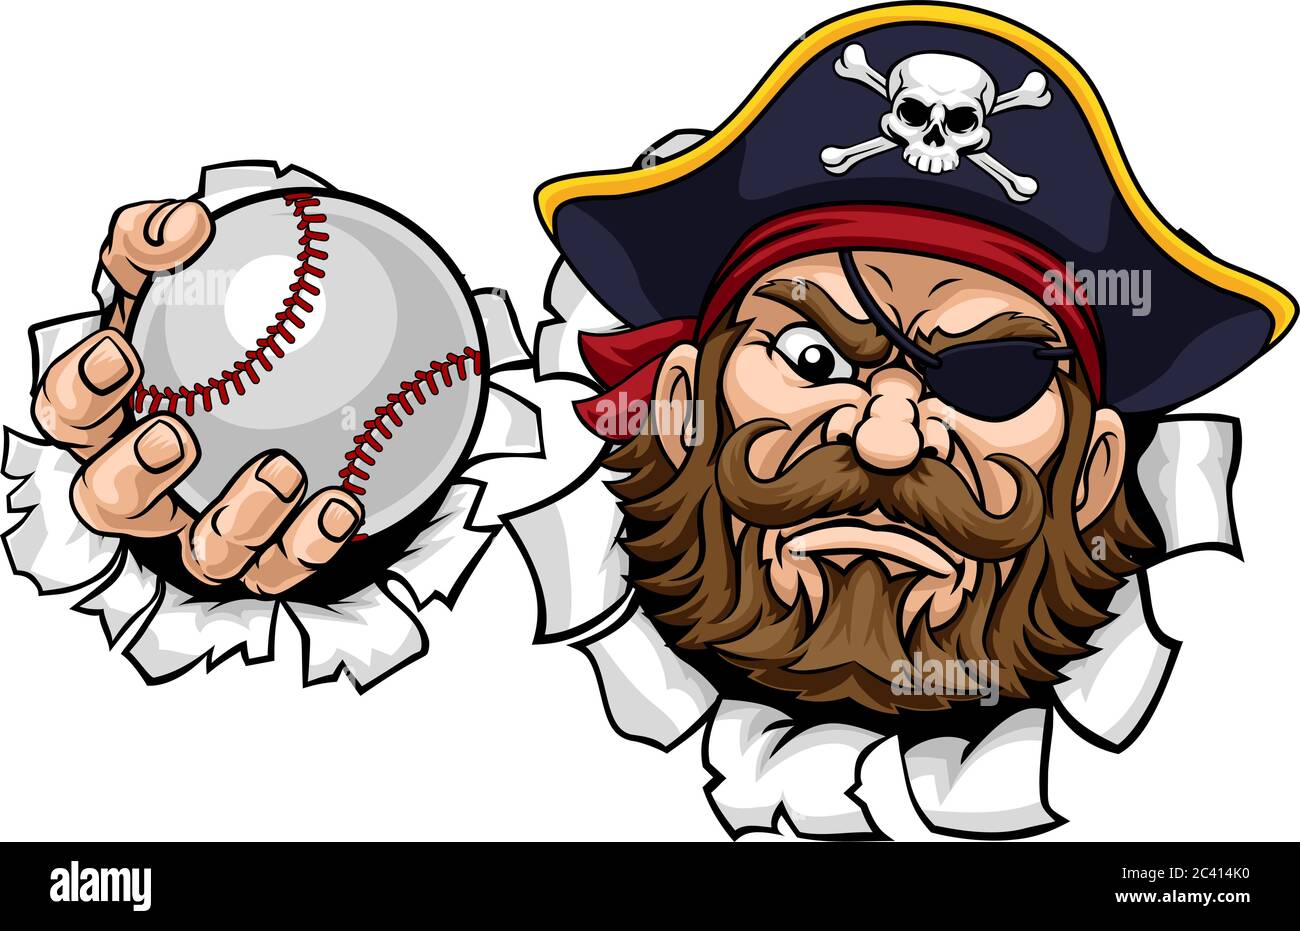 Baseball dei pirati immagini e fotografie stock ad alta risoluzione - Alamy